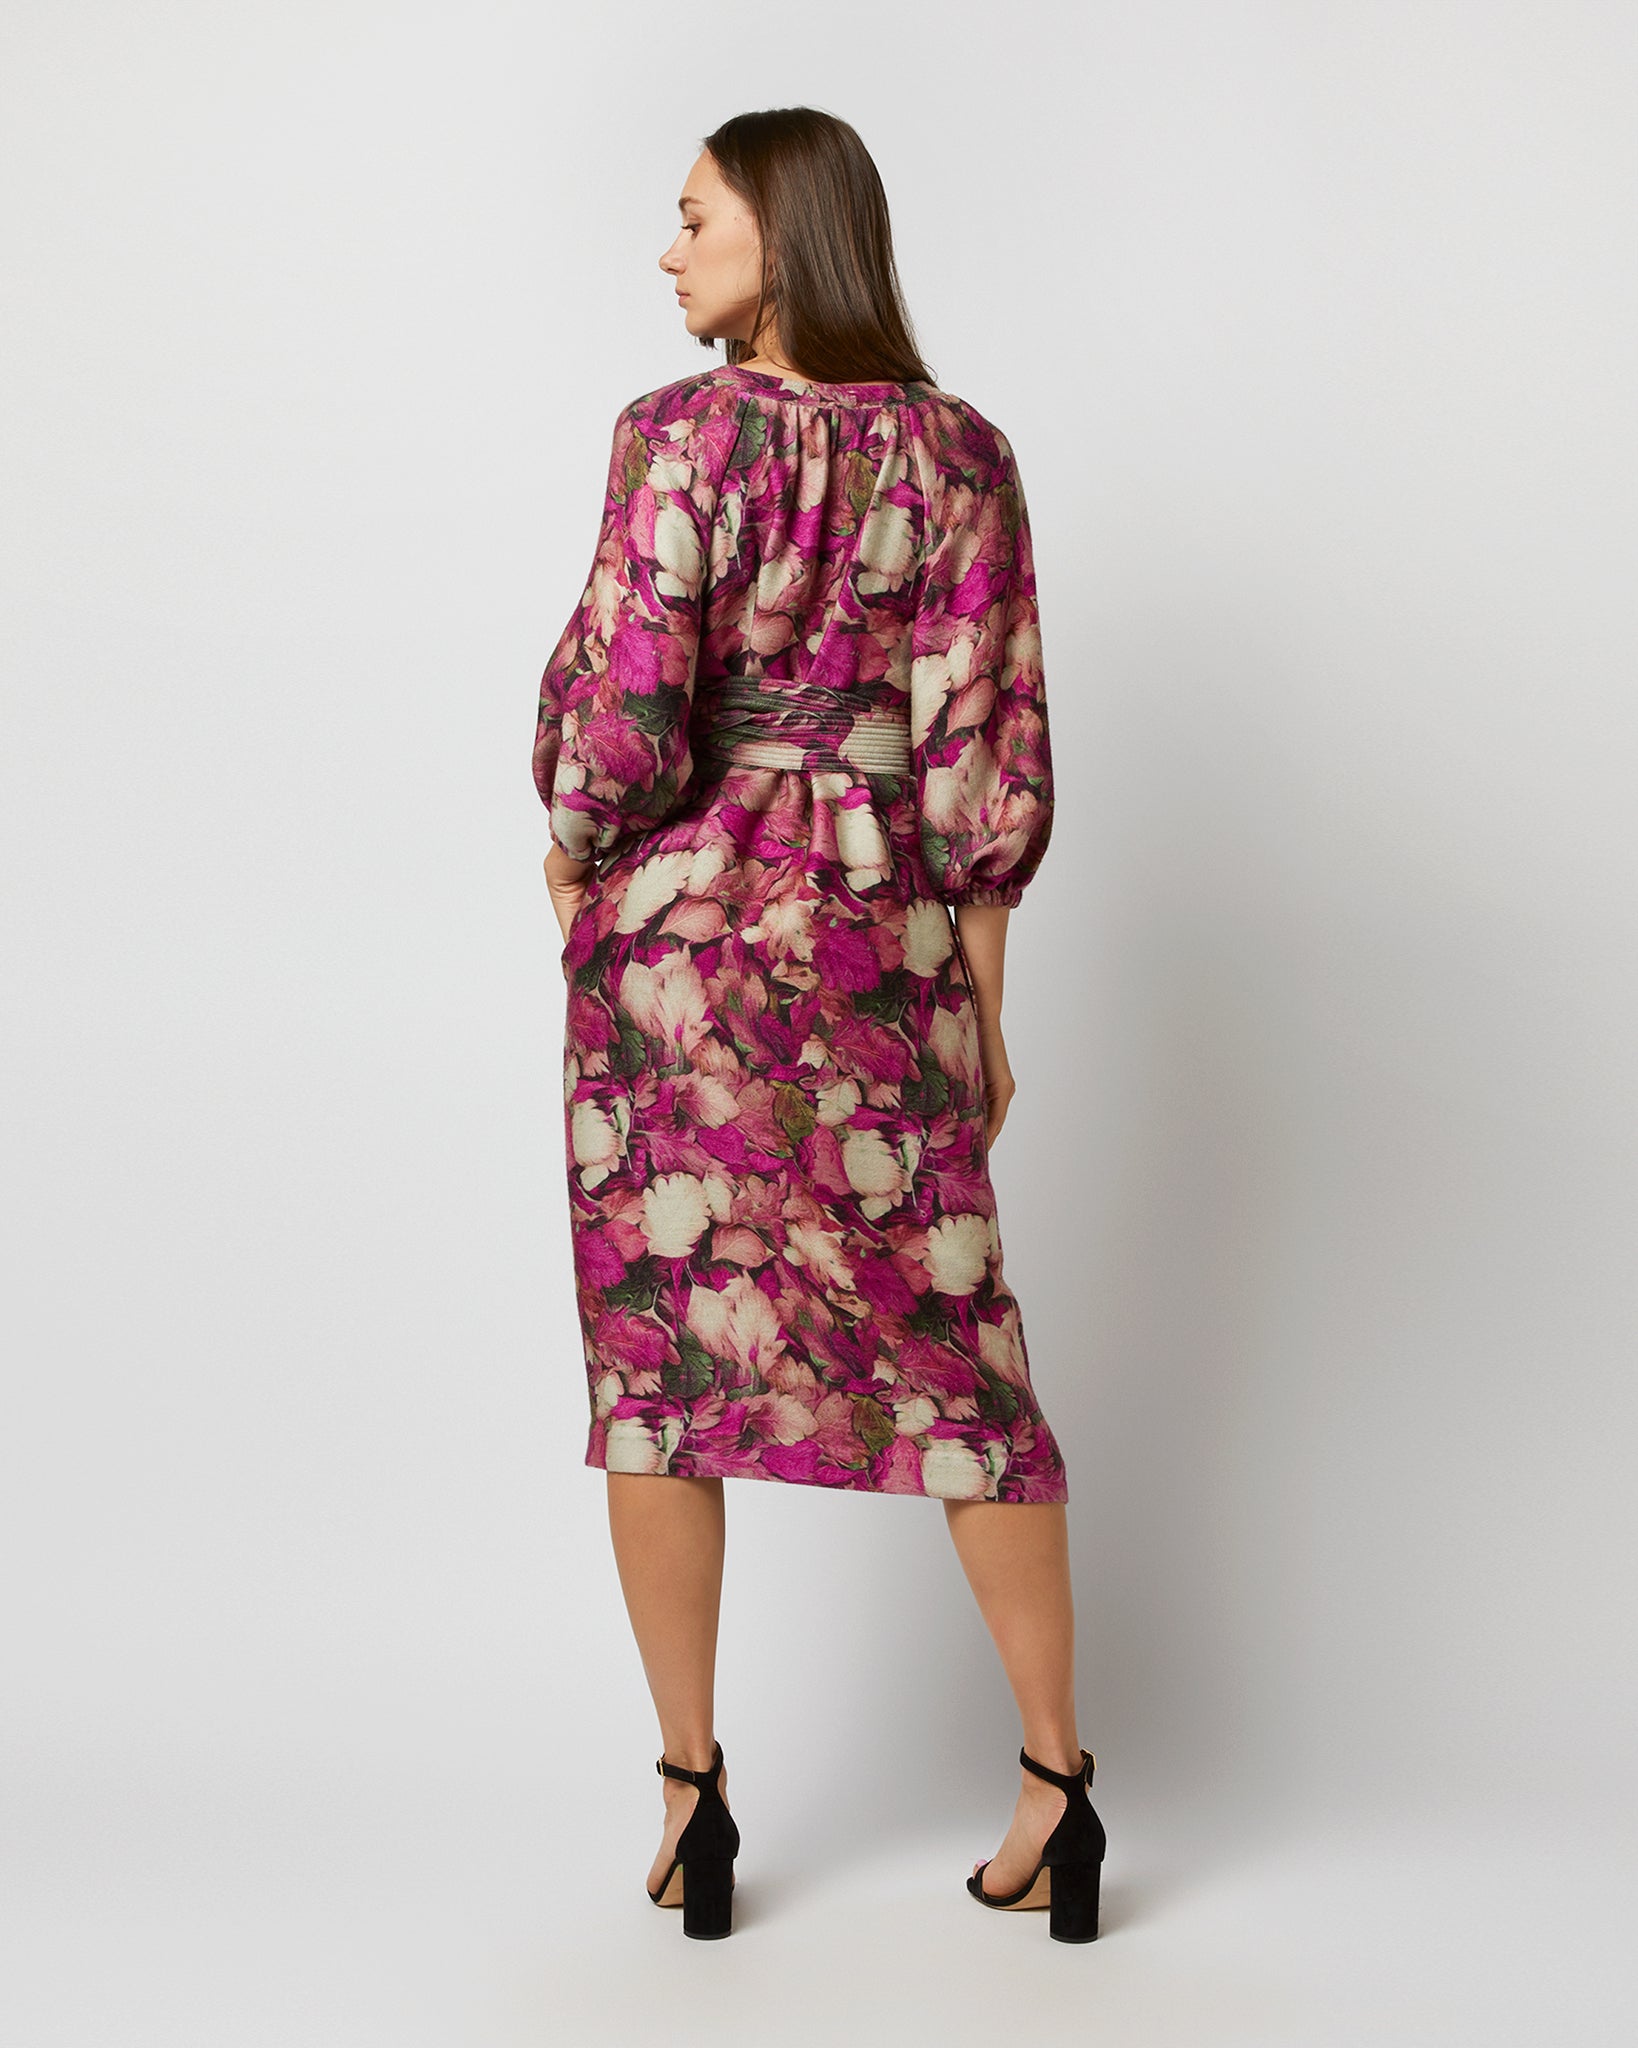 Trapunto Blouson-Sleeve Dress in Berry/Multi Winter Garden Venetian